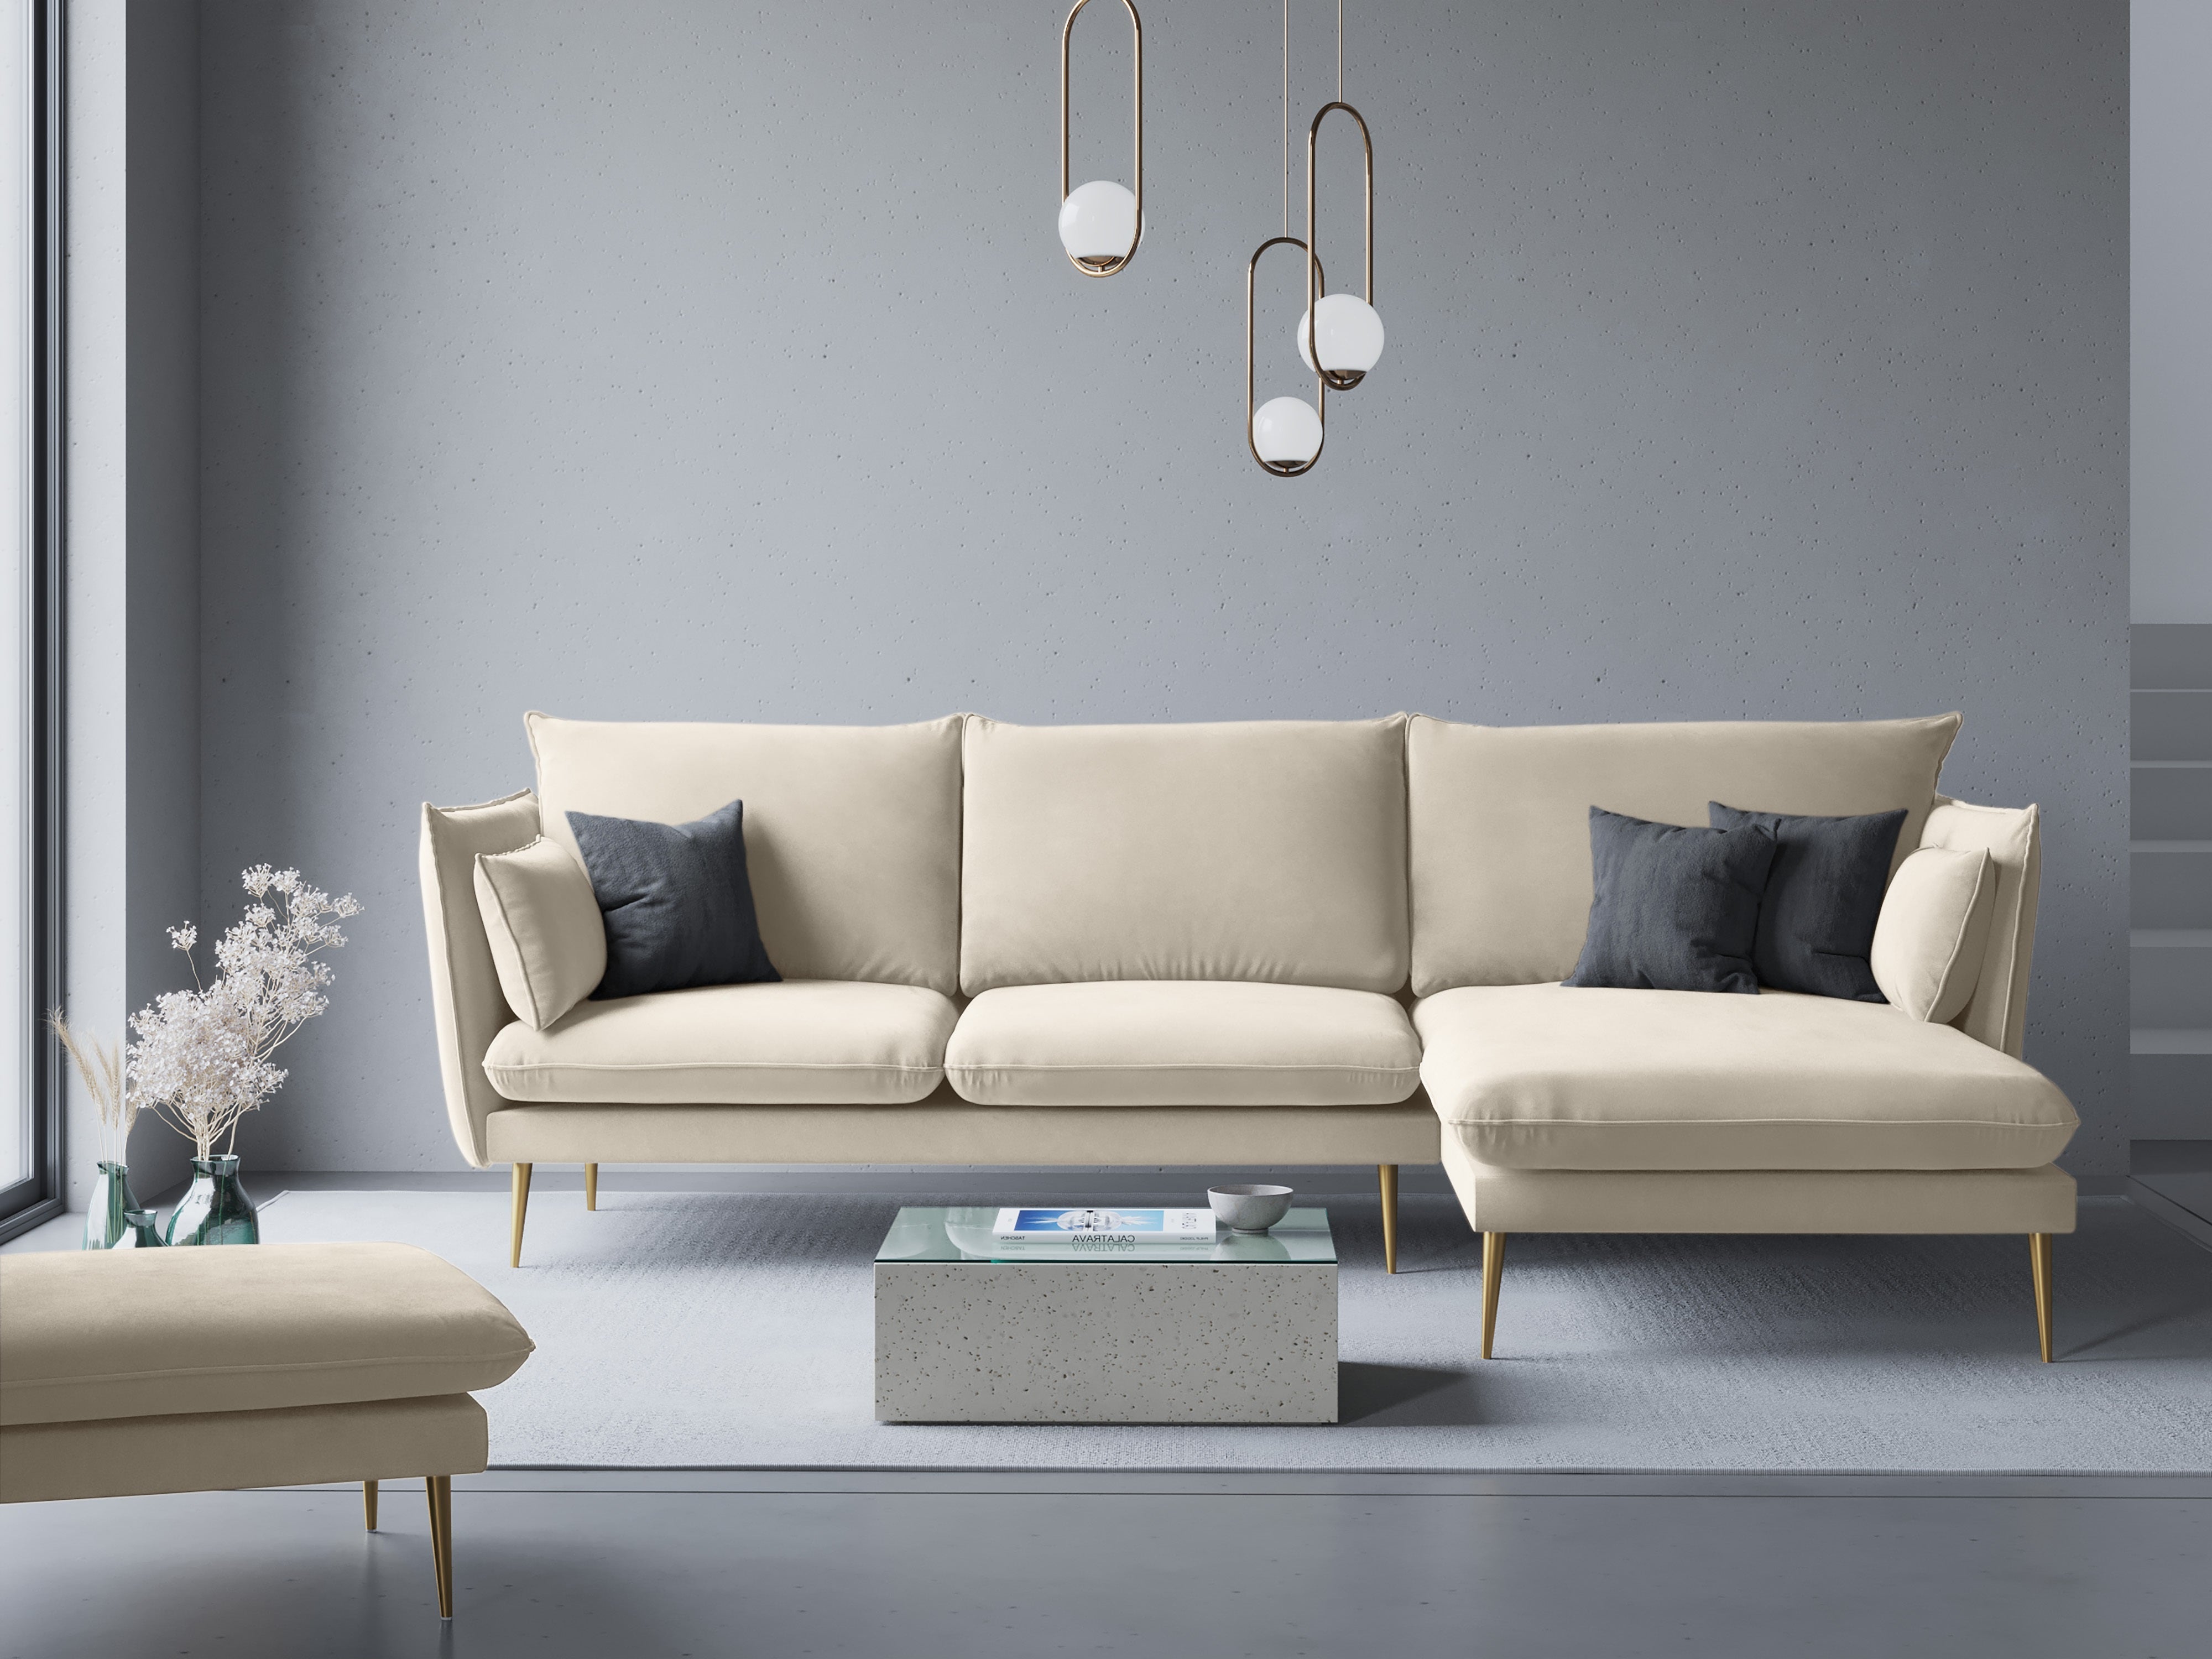 Glamor sofa for the living room